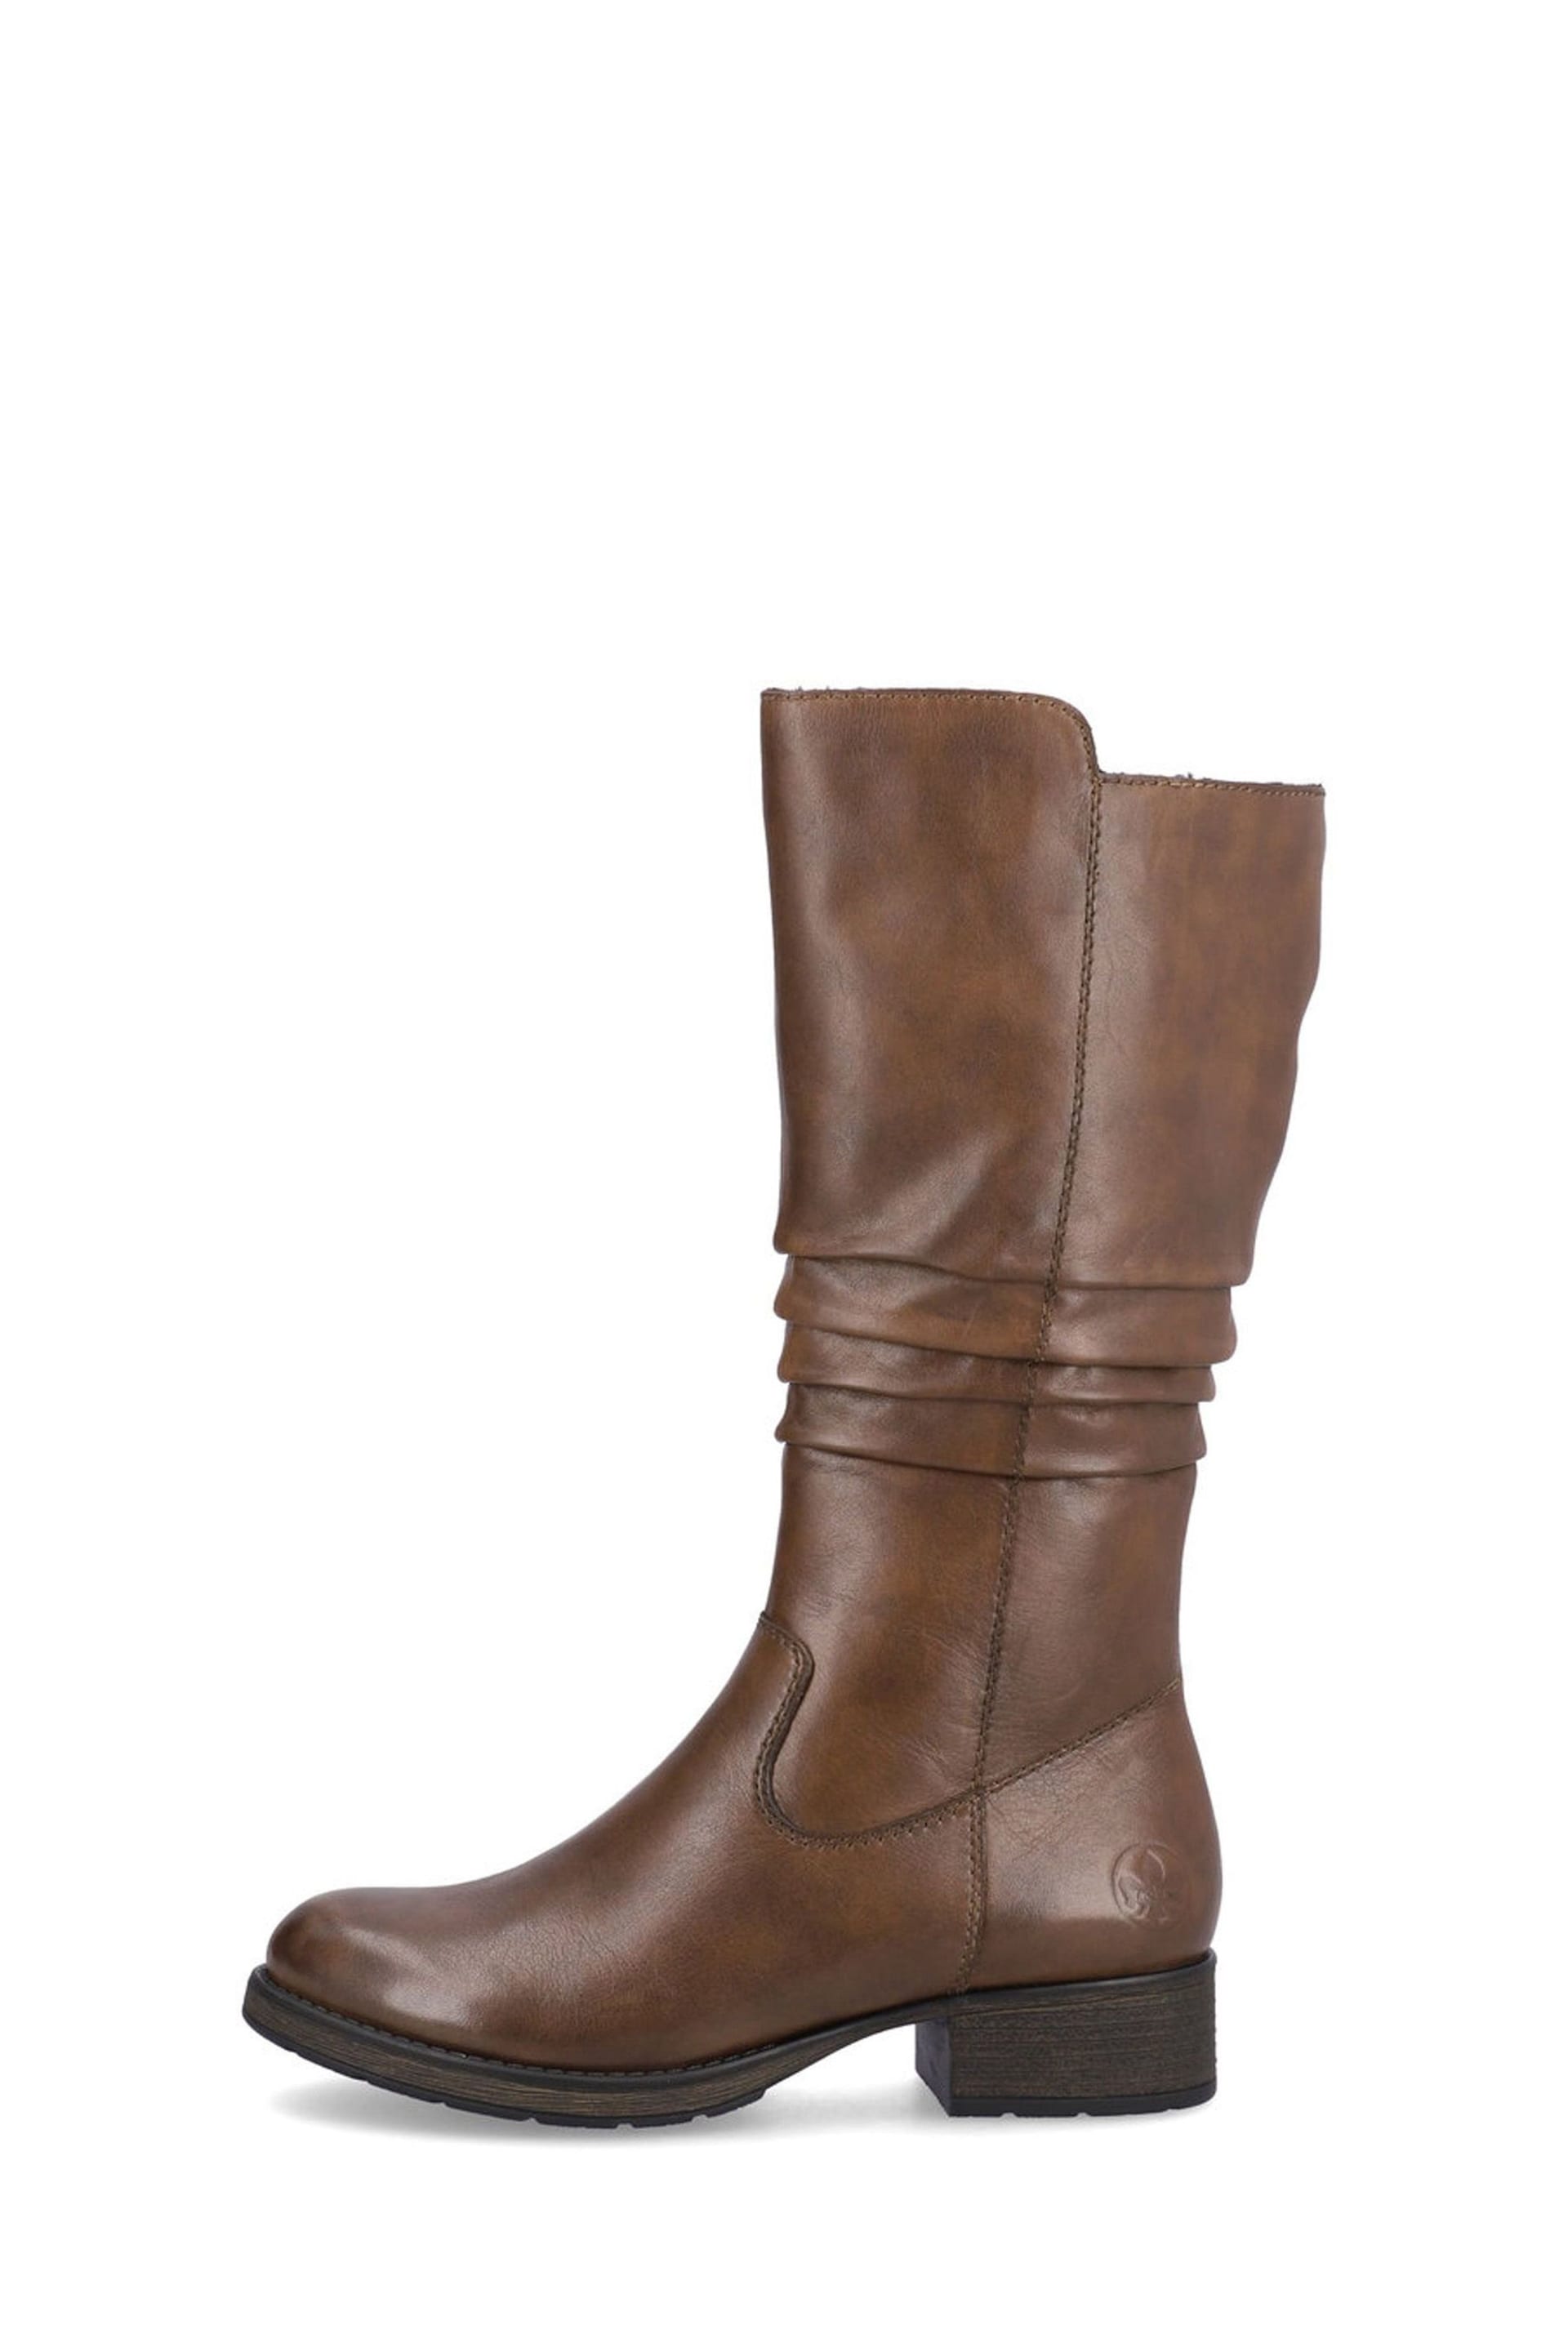 Rieker Womens Zipper Brown Boots - Image 3 of 10